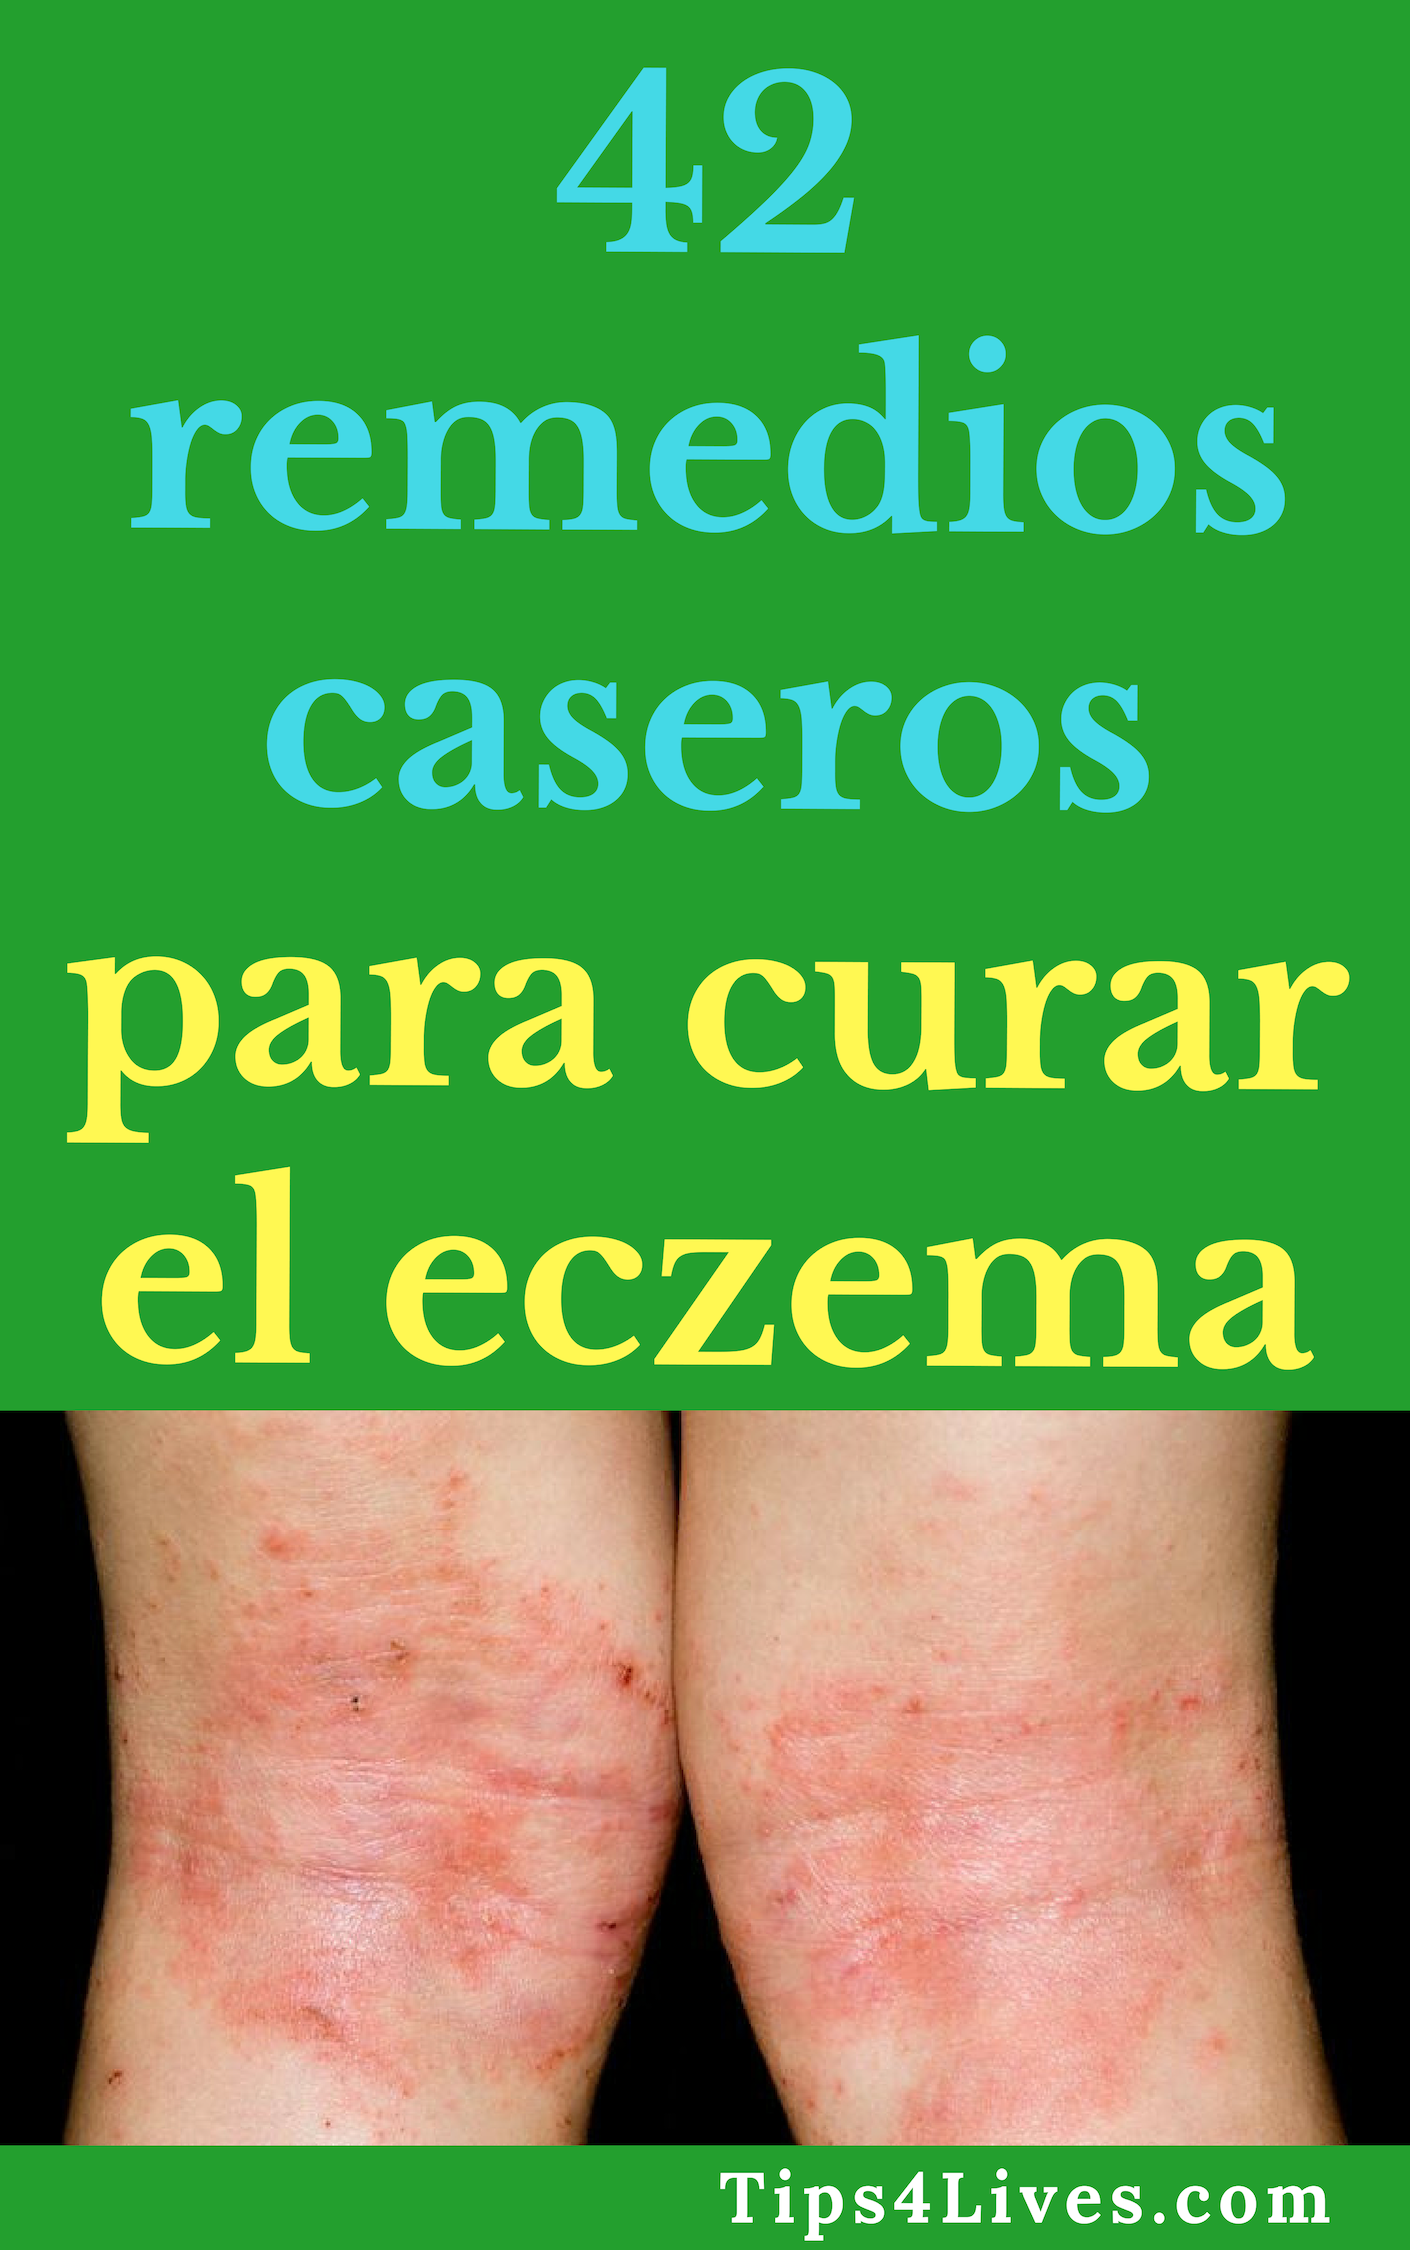 remedios caseros para el eczema onettechnologiesindia com